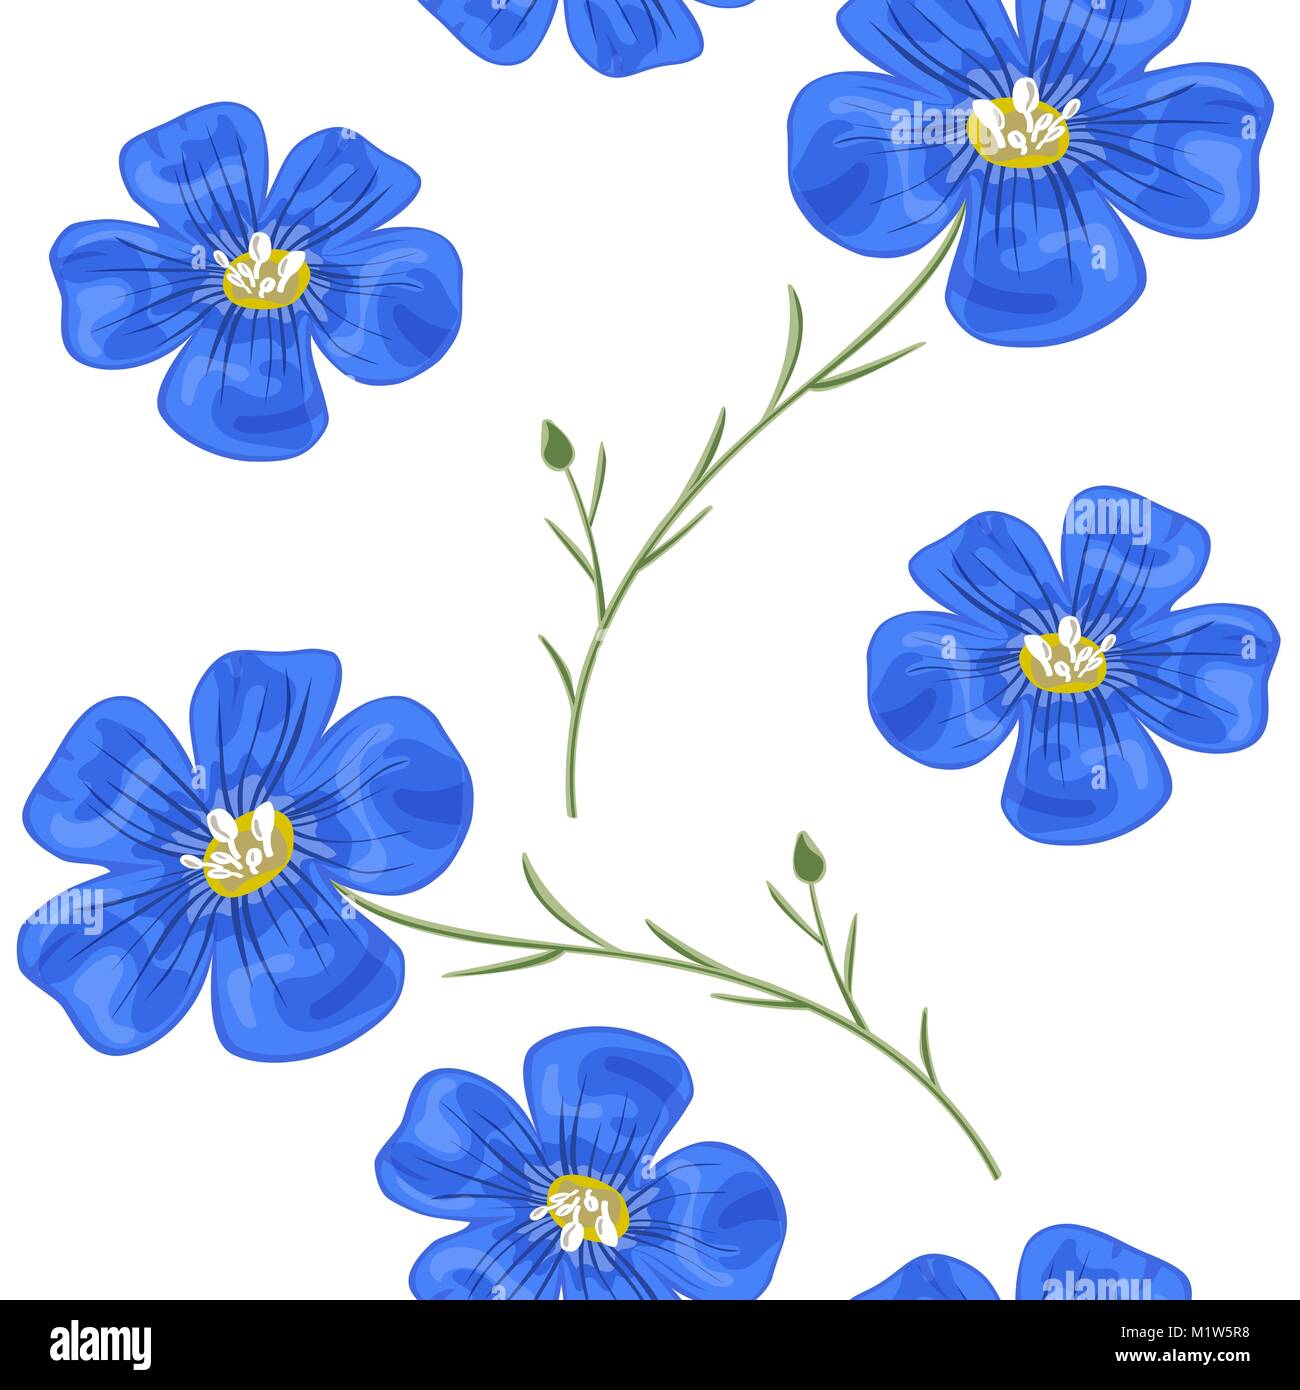 Flachs blauen Blüten mit Stammzellen. Nahtlose Muster. Vector Illustration. Design für Kräutertee, Health Care Produkte, Natürliche Kosmetik, Parfümerie, essenti Stock Vektor